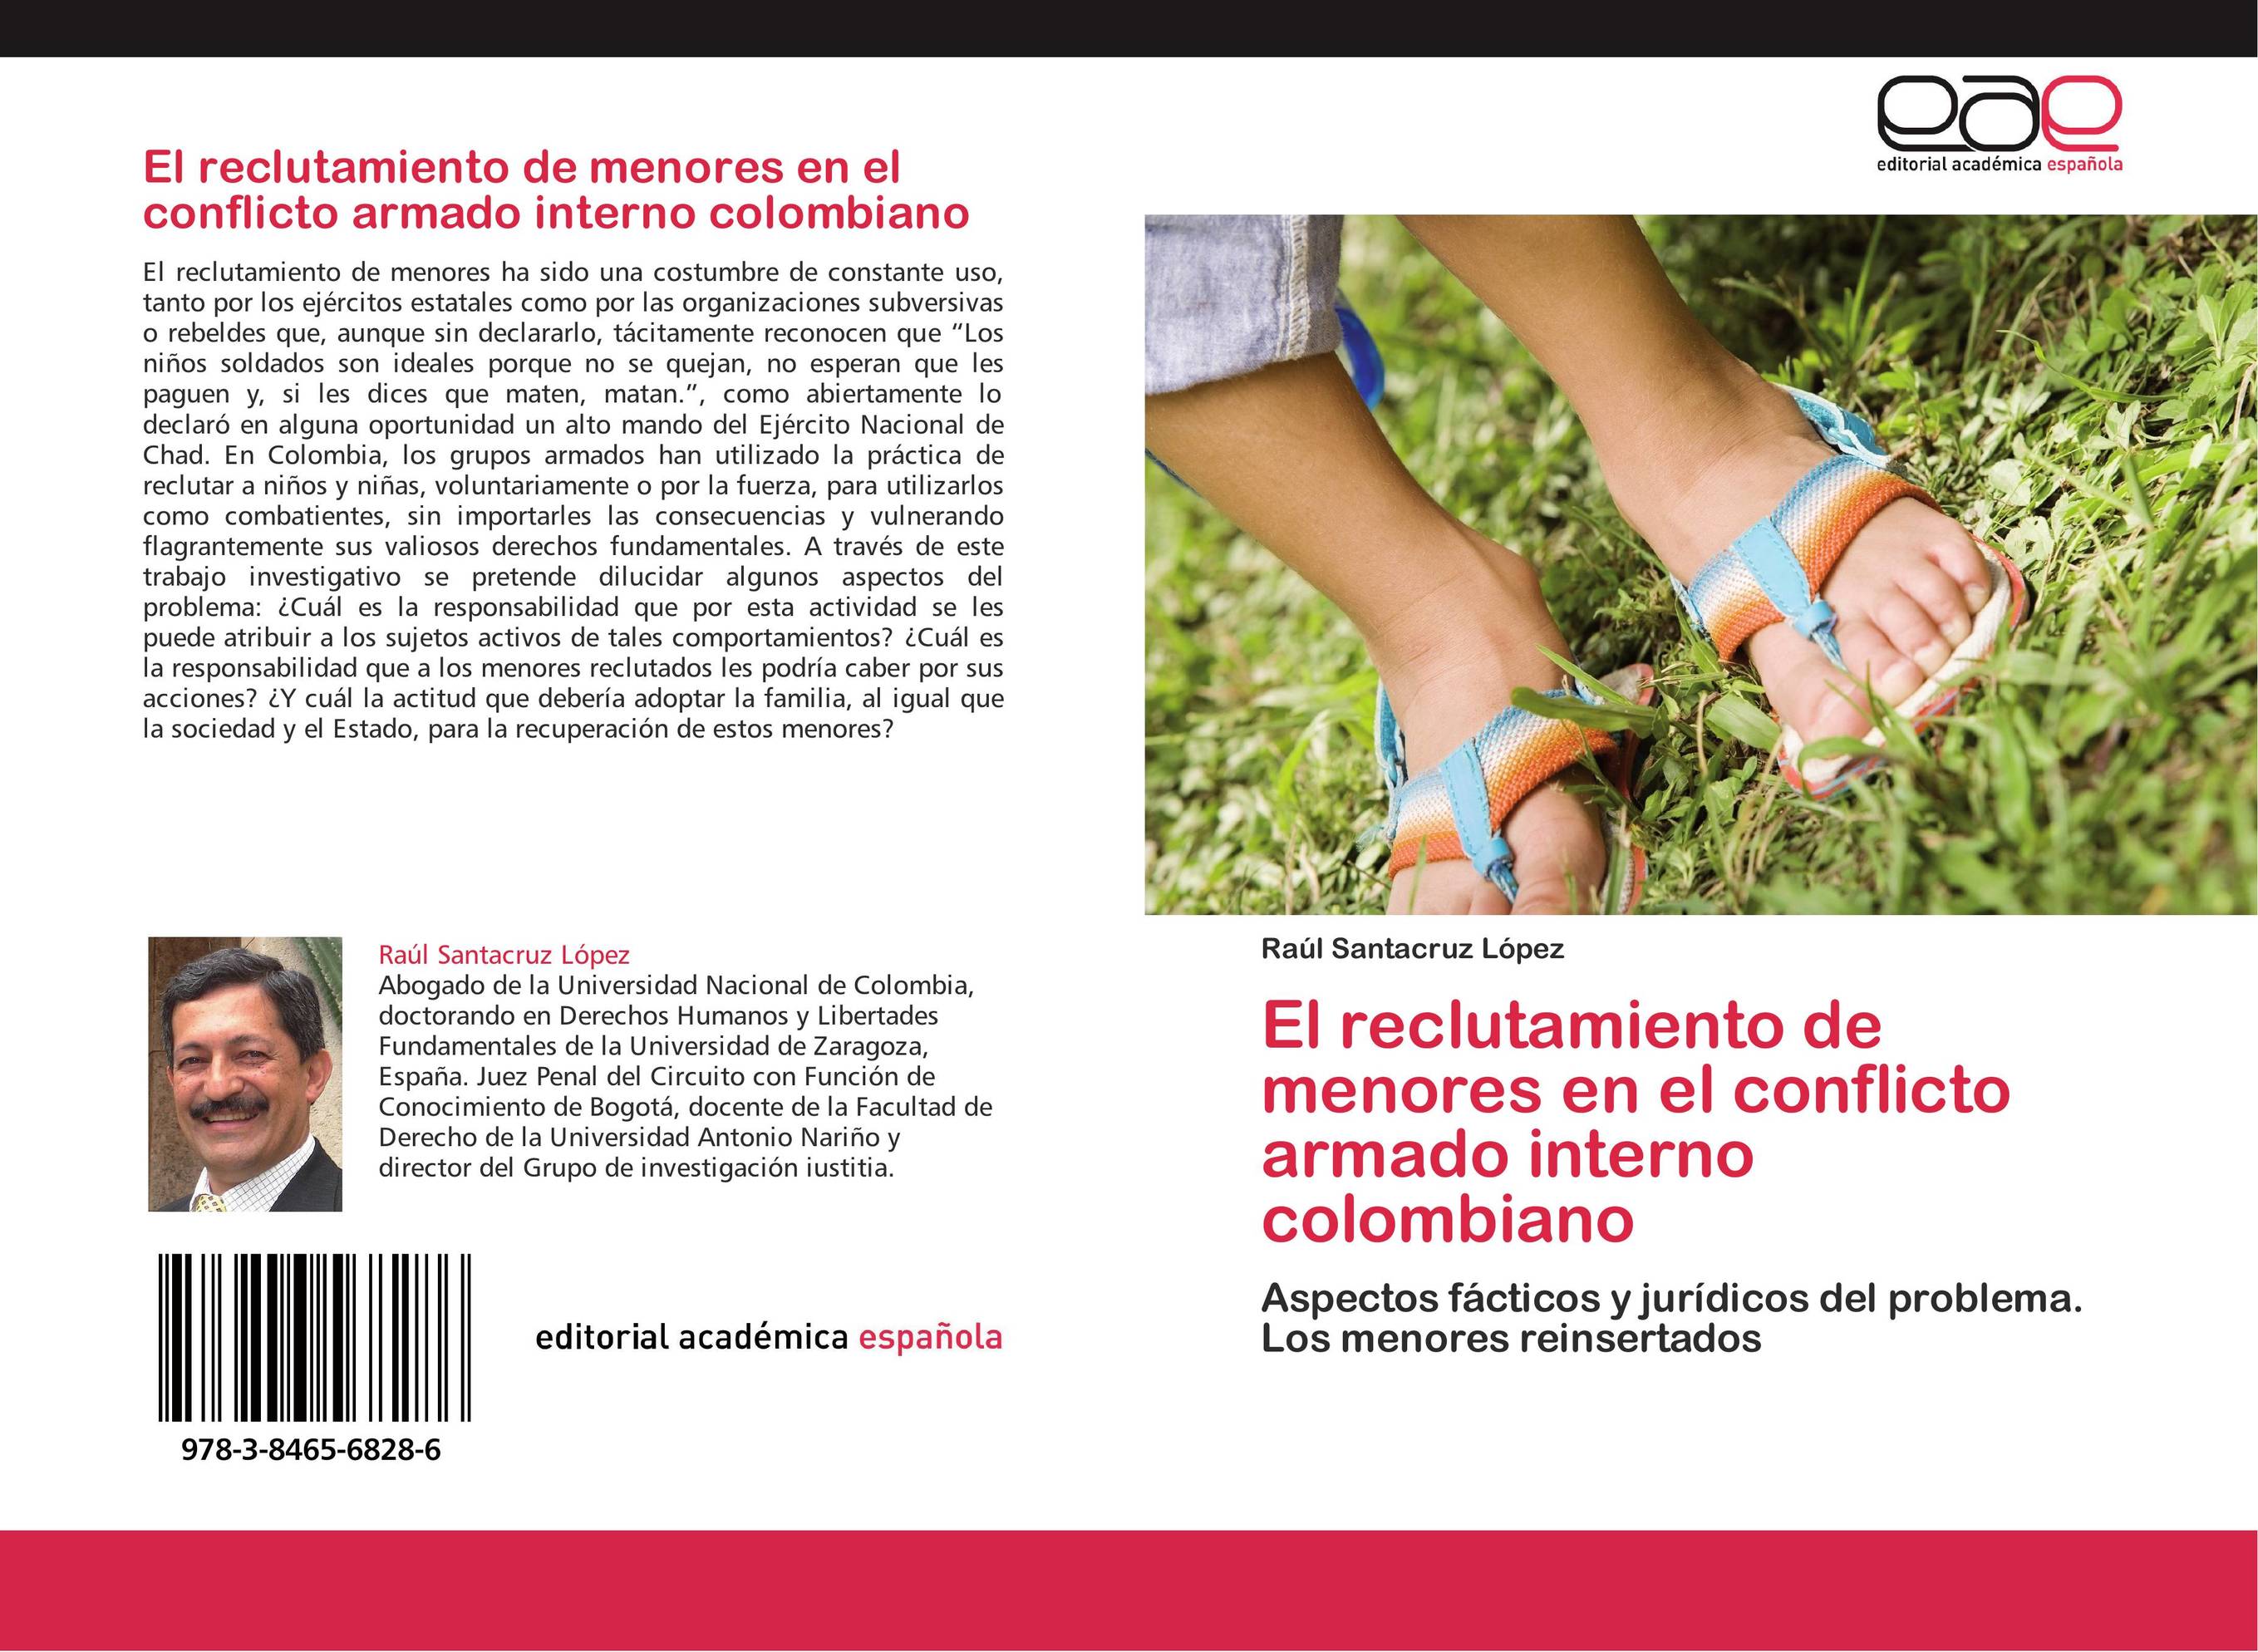 El reclutamiento de menores en el conflicto armado interno colombiano